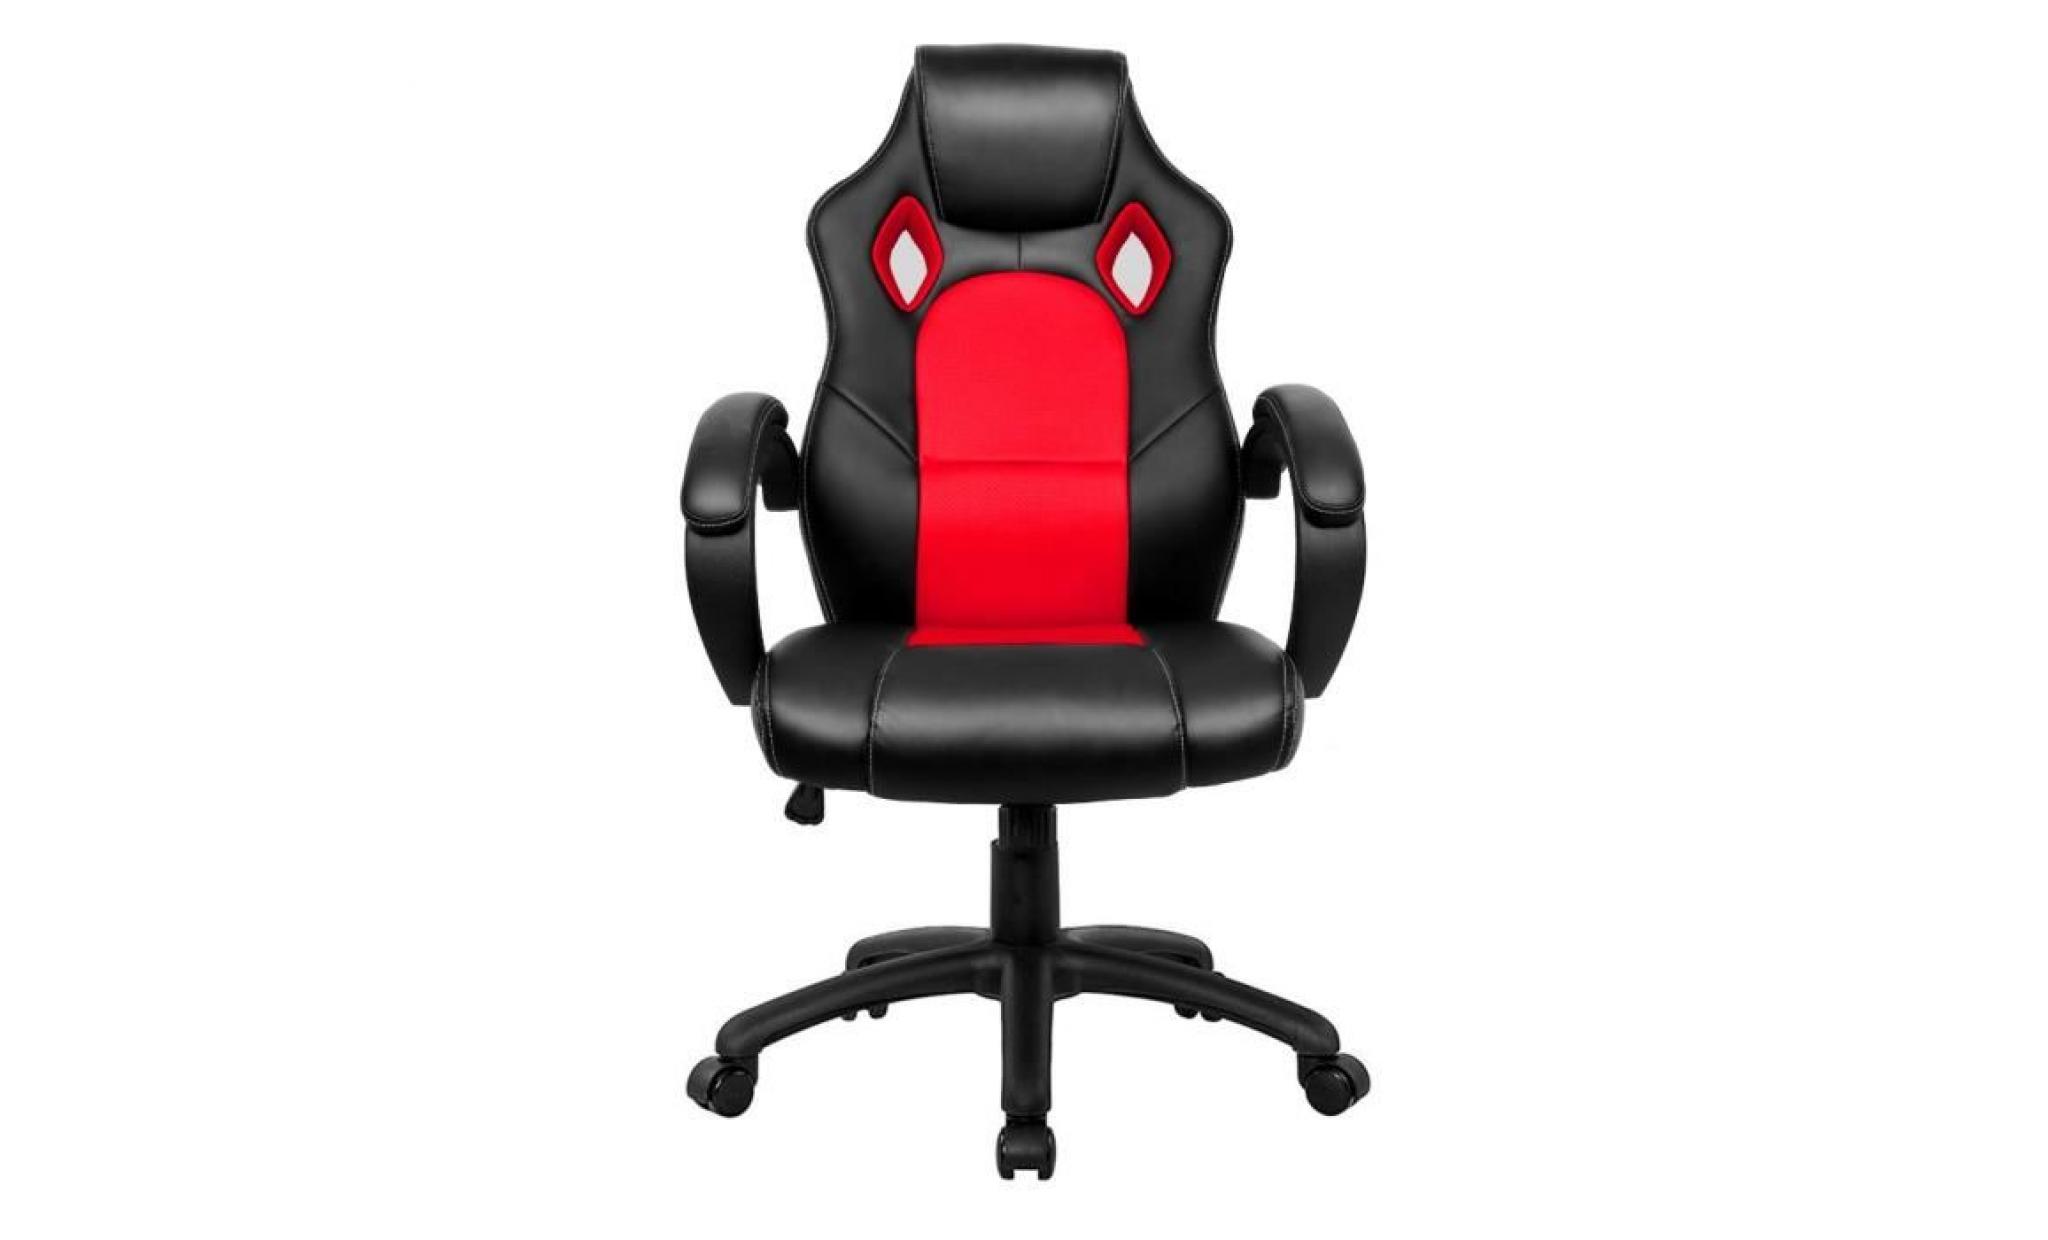 fauteuil de bureau chaise de bureau   moderne confortable ergonomique en similicuir   hauteur réglable   rouge   intimate wm heart pas cher